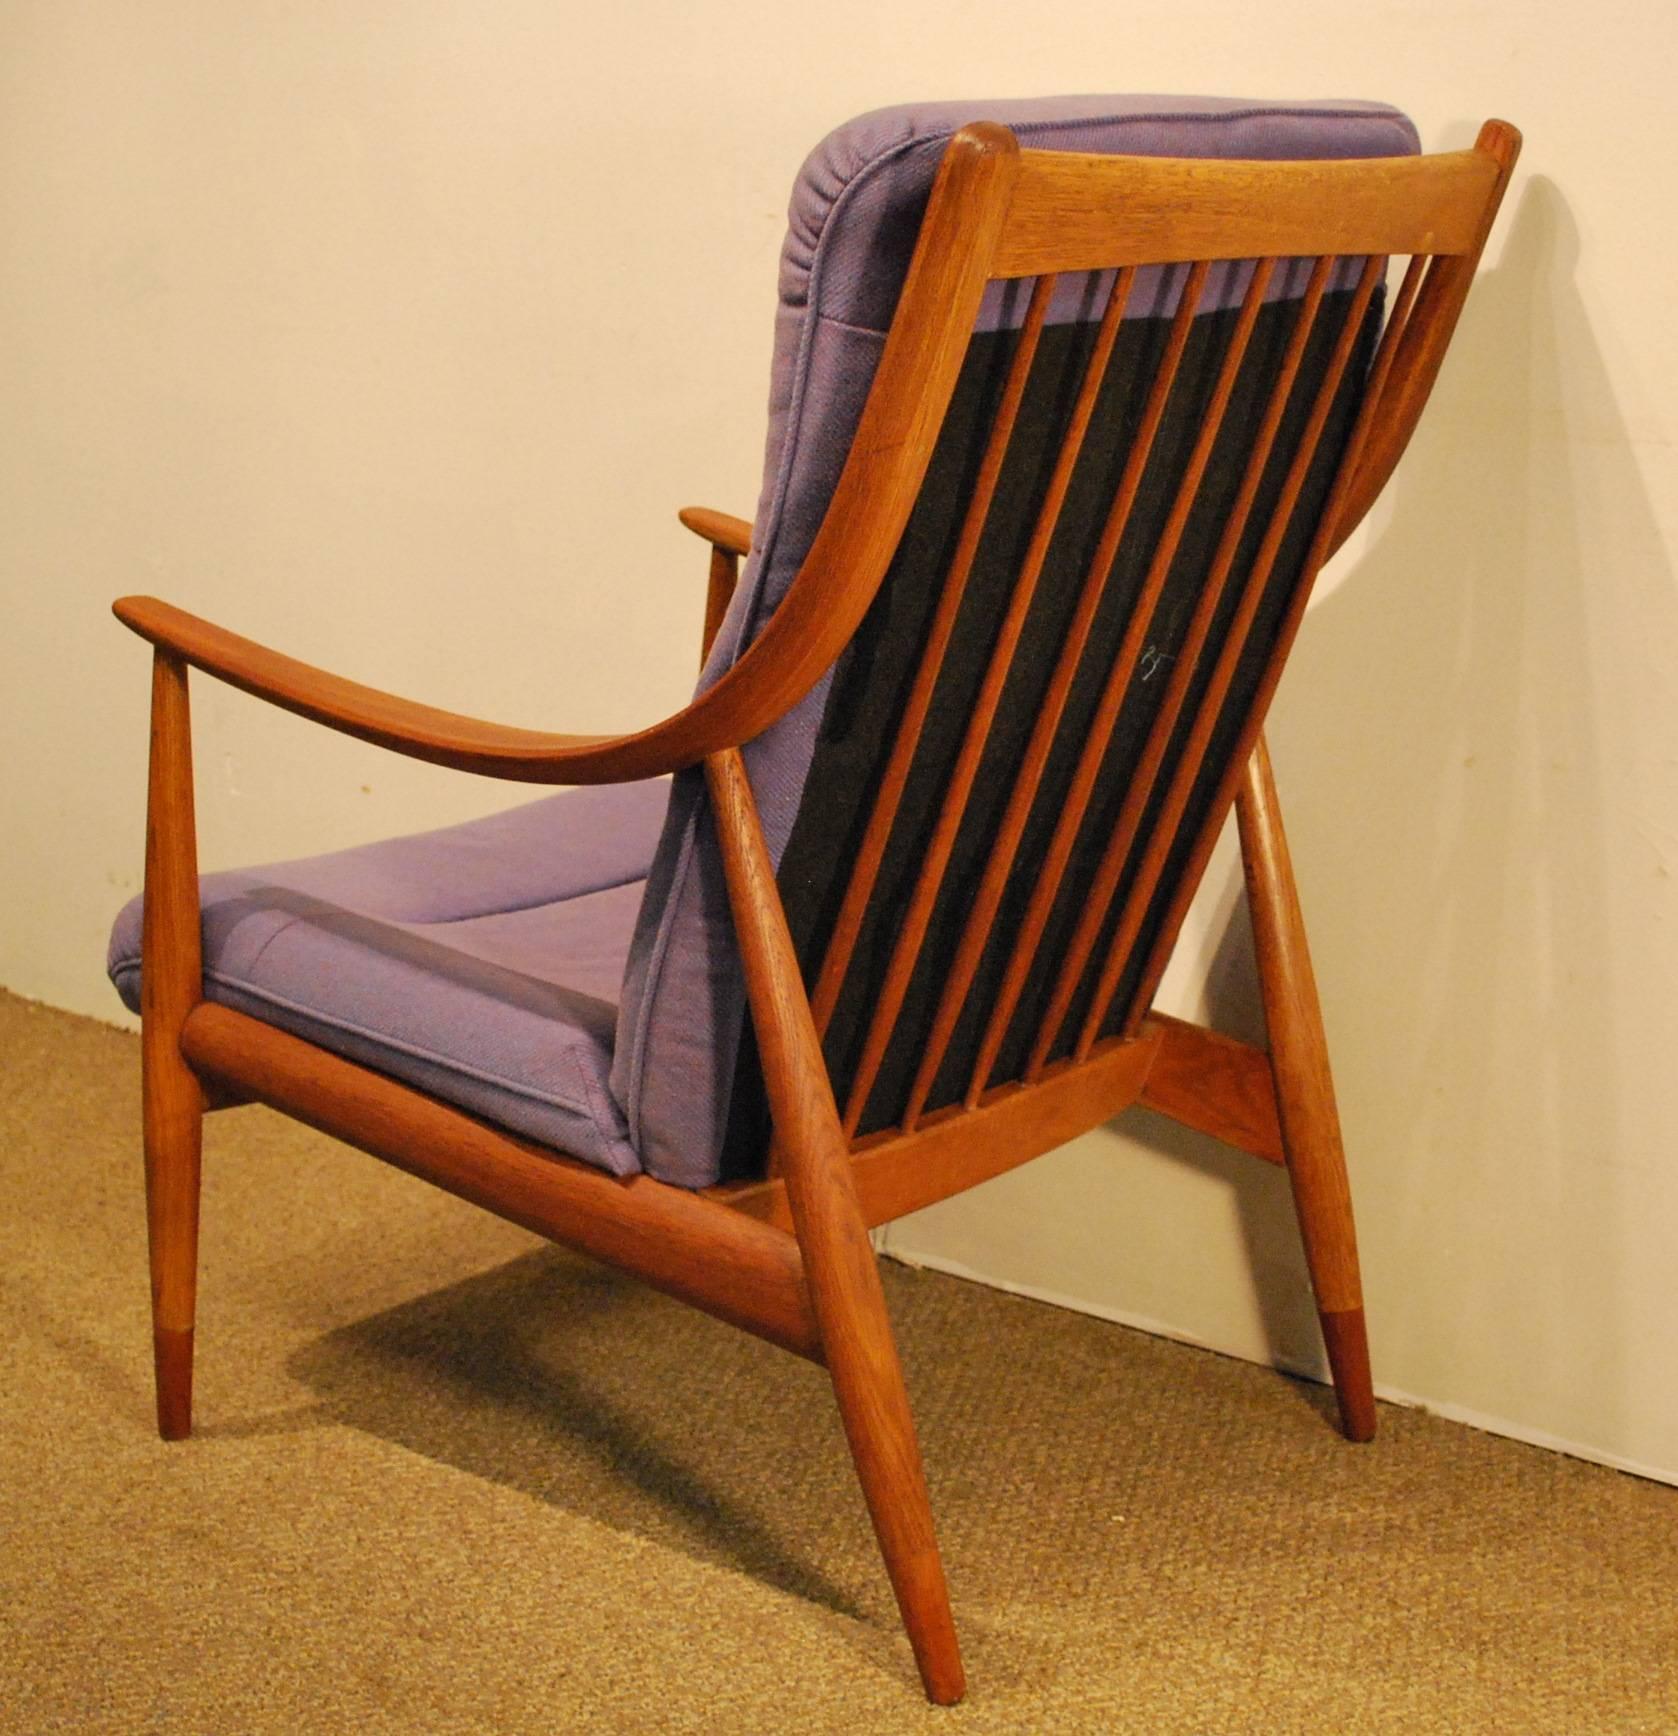 Scandinavian Modern Peter Hvidt/Orla Molgaard-Nielsen Designed Danish Modern Teak Easy Chair #148  For Sale